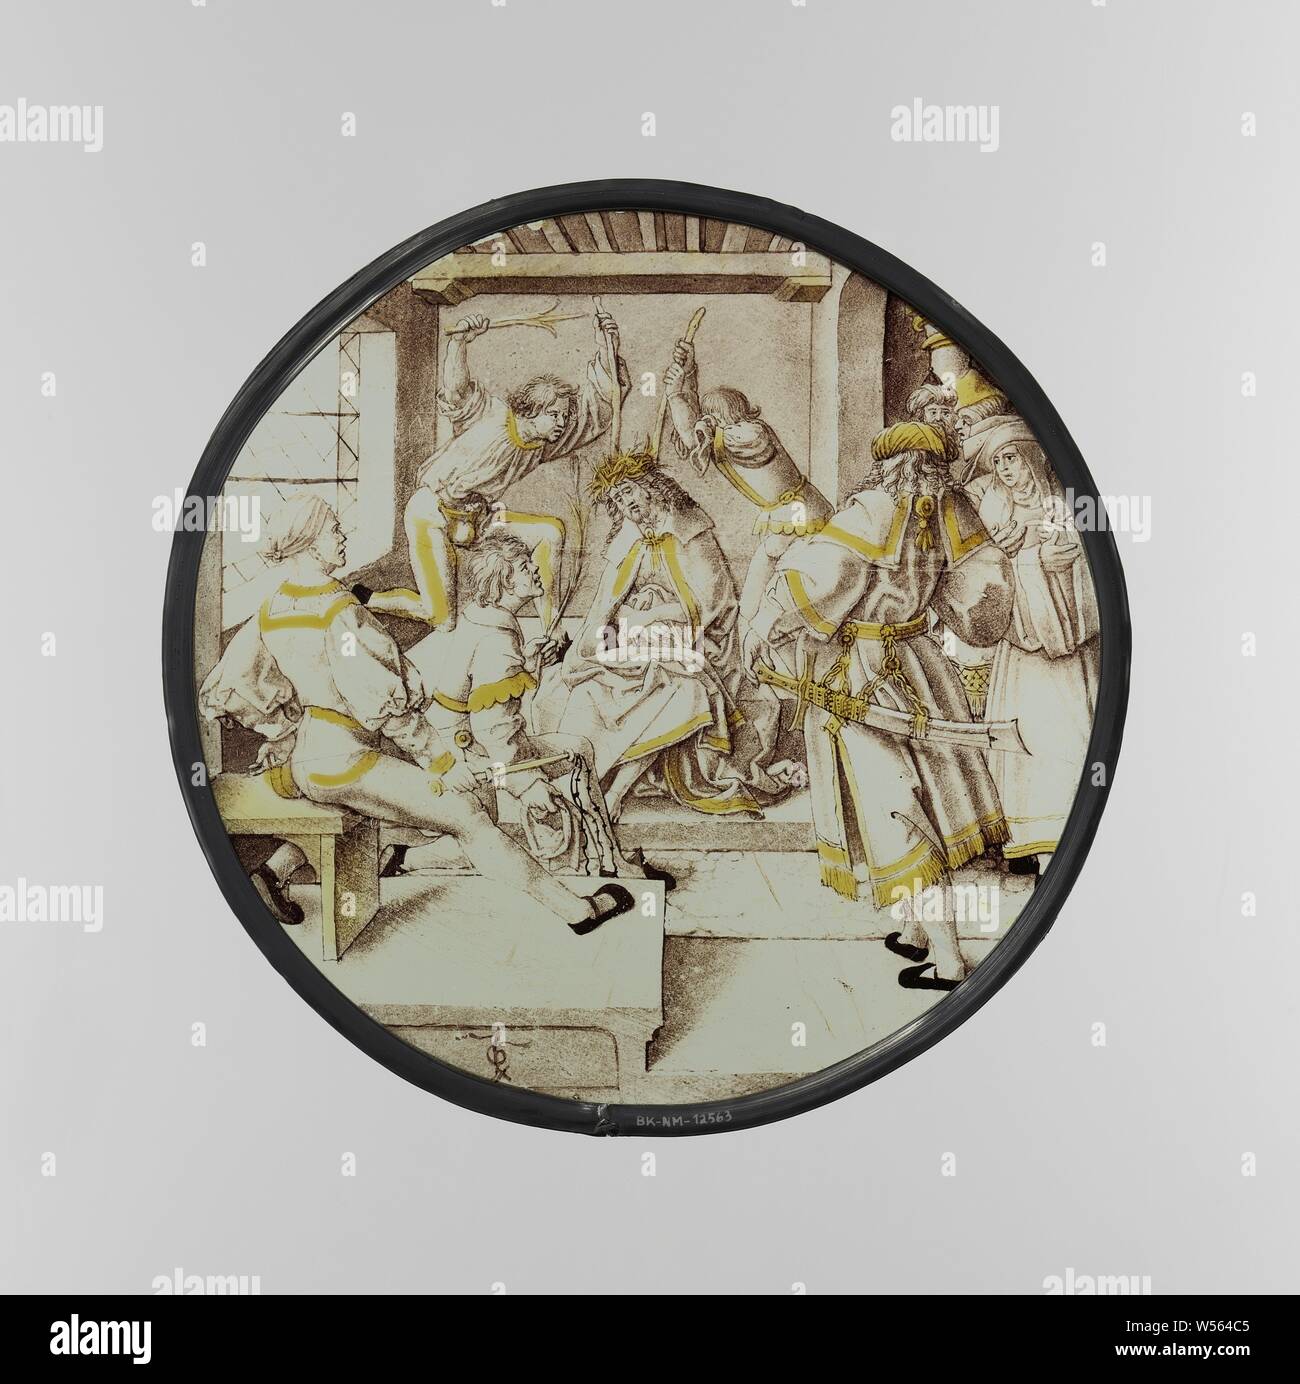 La corona di spine, rotondo in vetro colorato con la rappresentazione della corona di spine di Cristo. Firmato con monogramma., anonimo, Paesi Bassi, c. 1515 - c. 1520, vetro, silver stain, d 23,6 cm Foto Stock